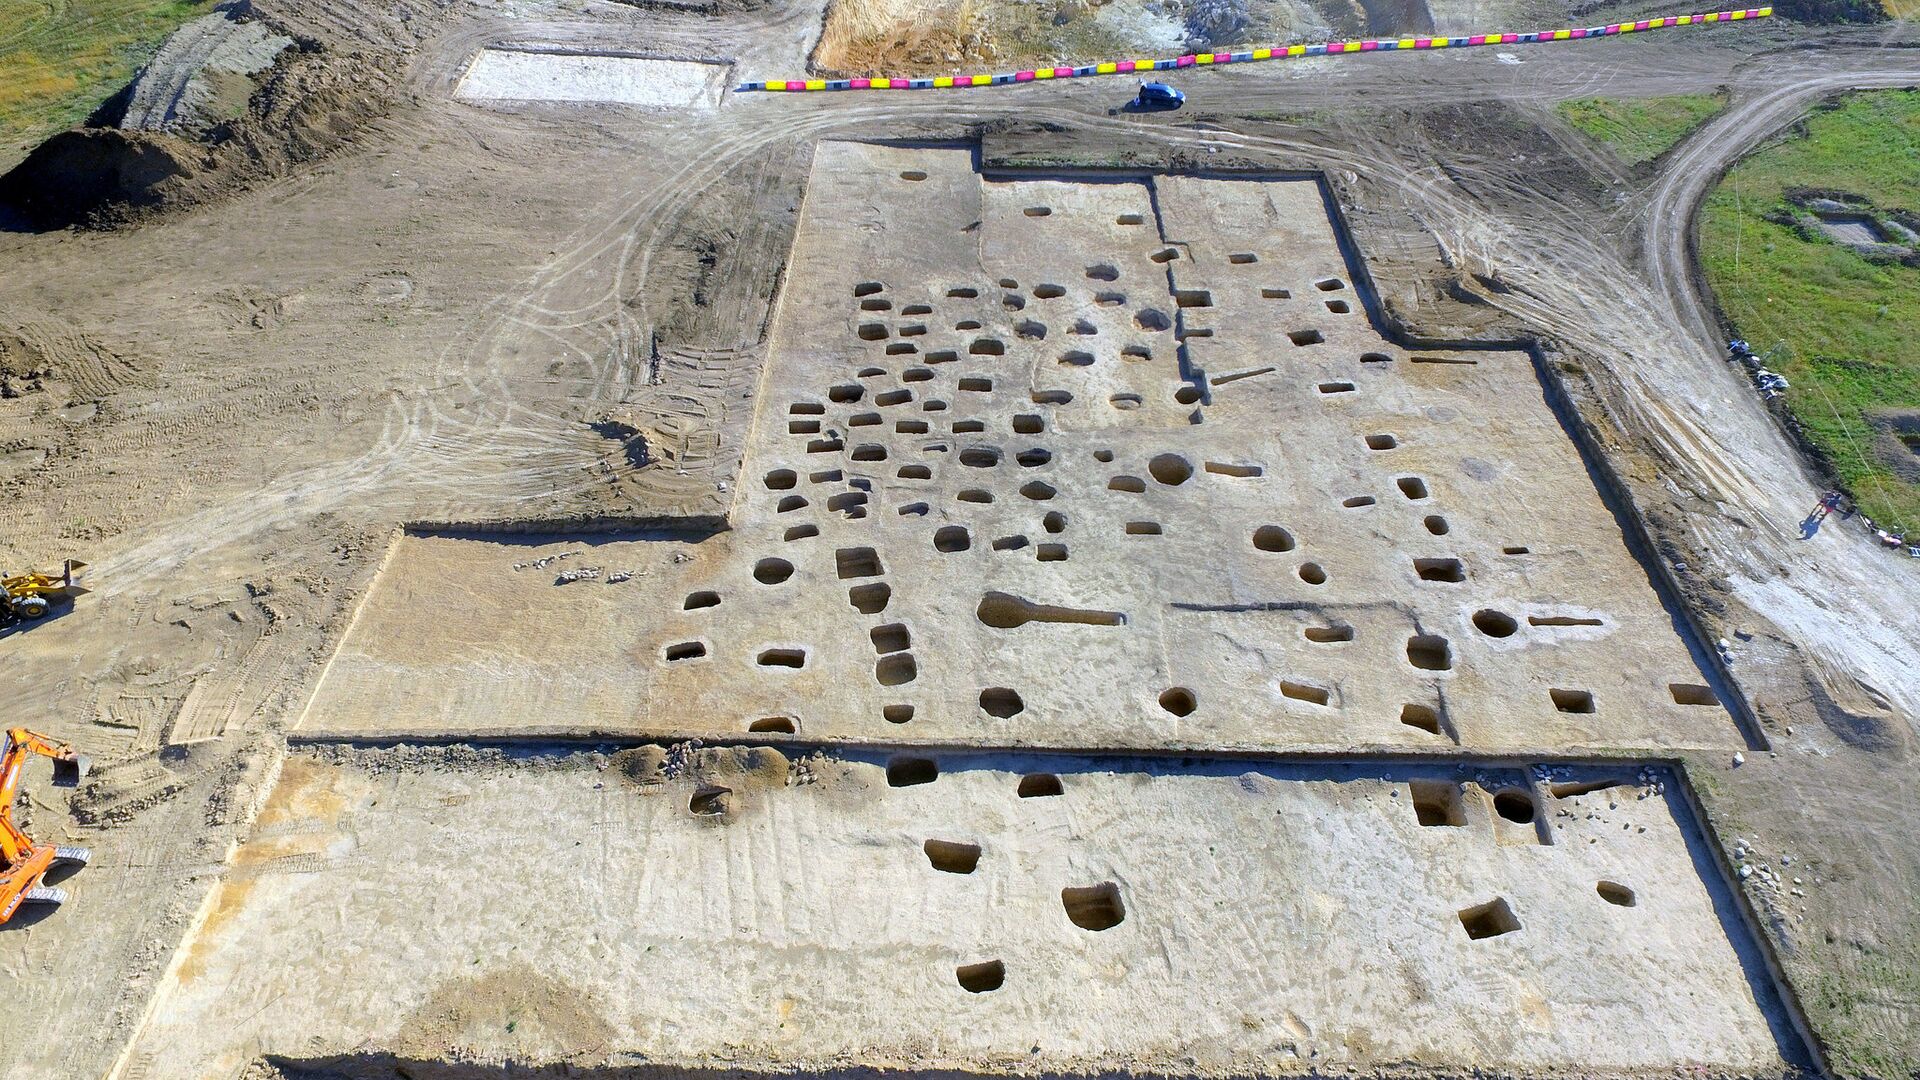 Позднескифский могильник II-IV веков нашей эры, найденный при раскопках на будущей автотрассе Таврида в районе Севастополя. 29 июня 2018 - РИА Новости, 1920, 28.01.2021